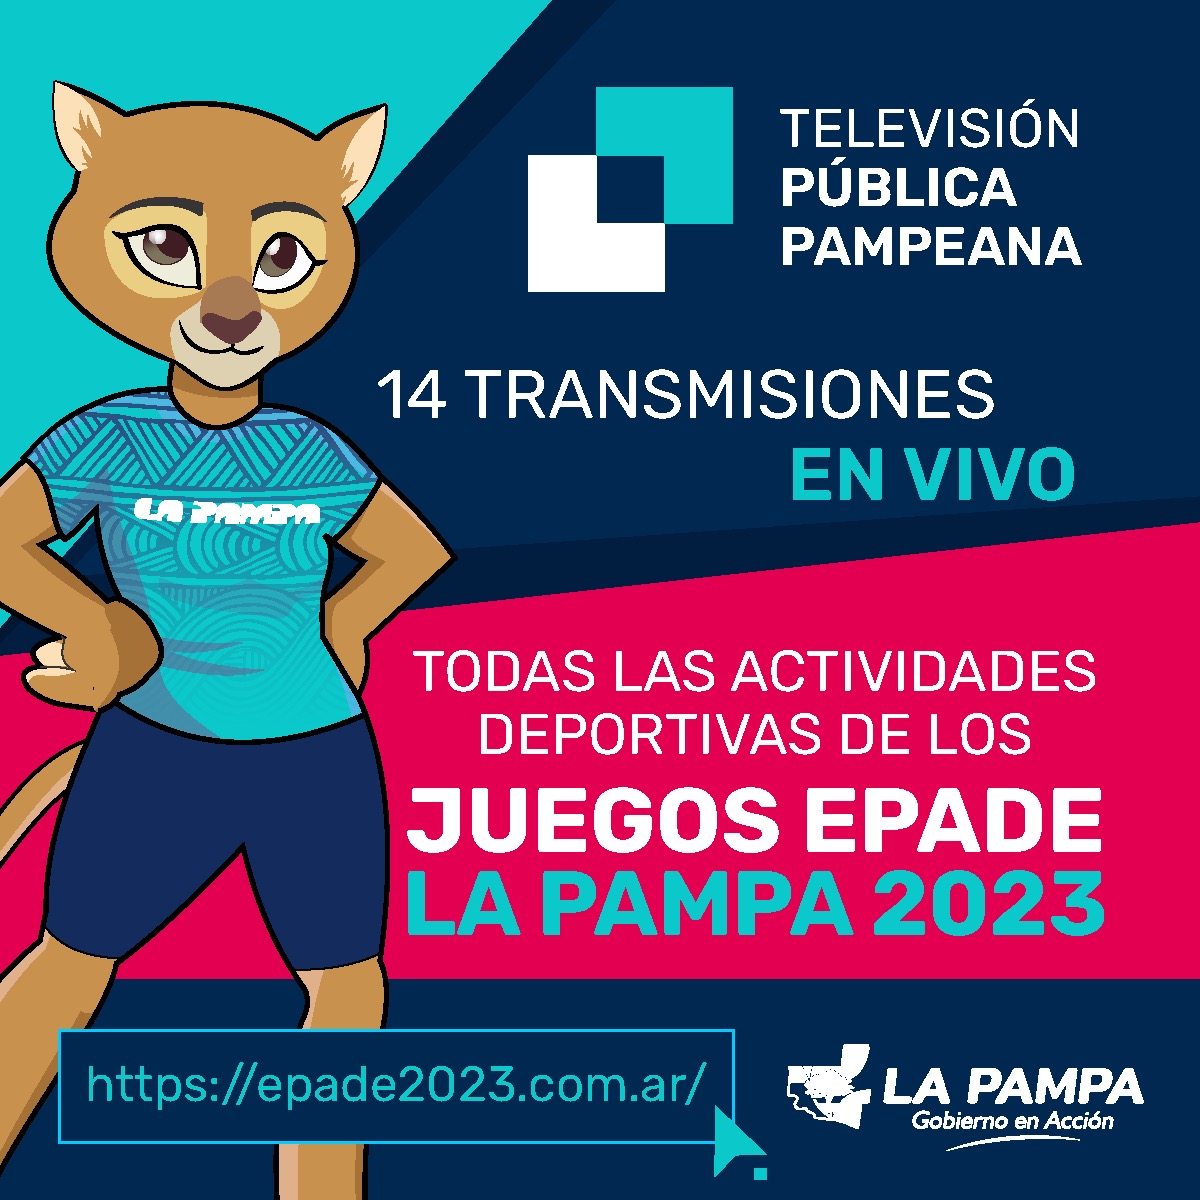 Los Juegos EPADE La Pampa 2023 con transmisión especial de la TVPP